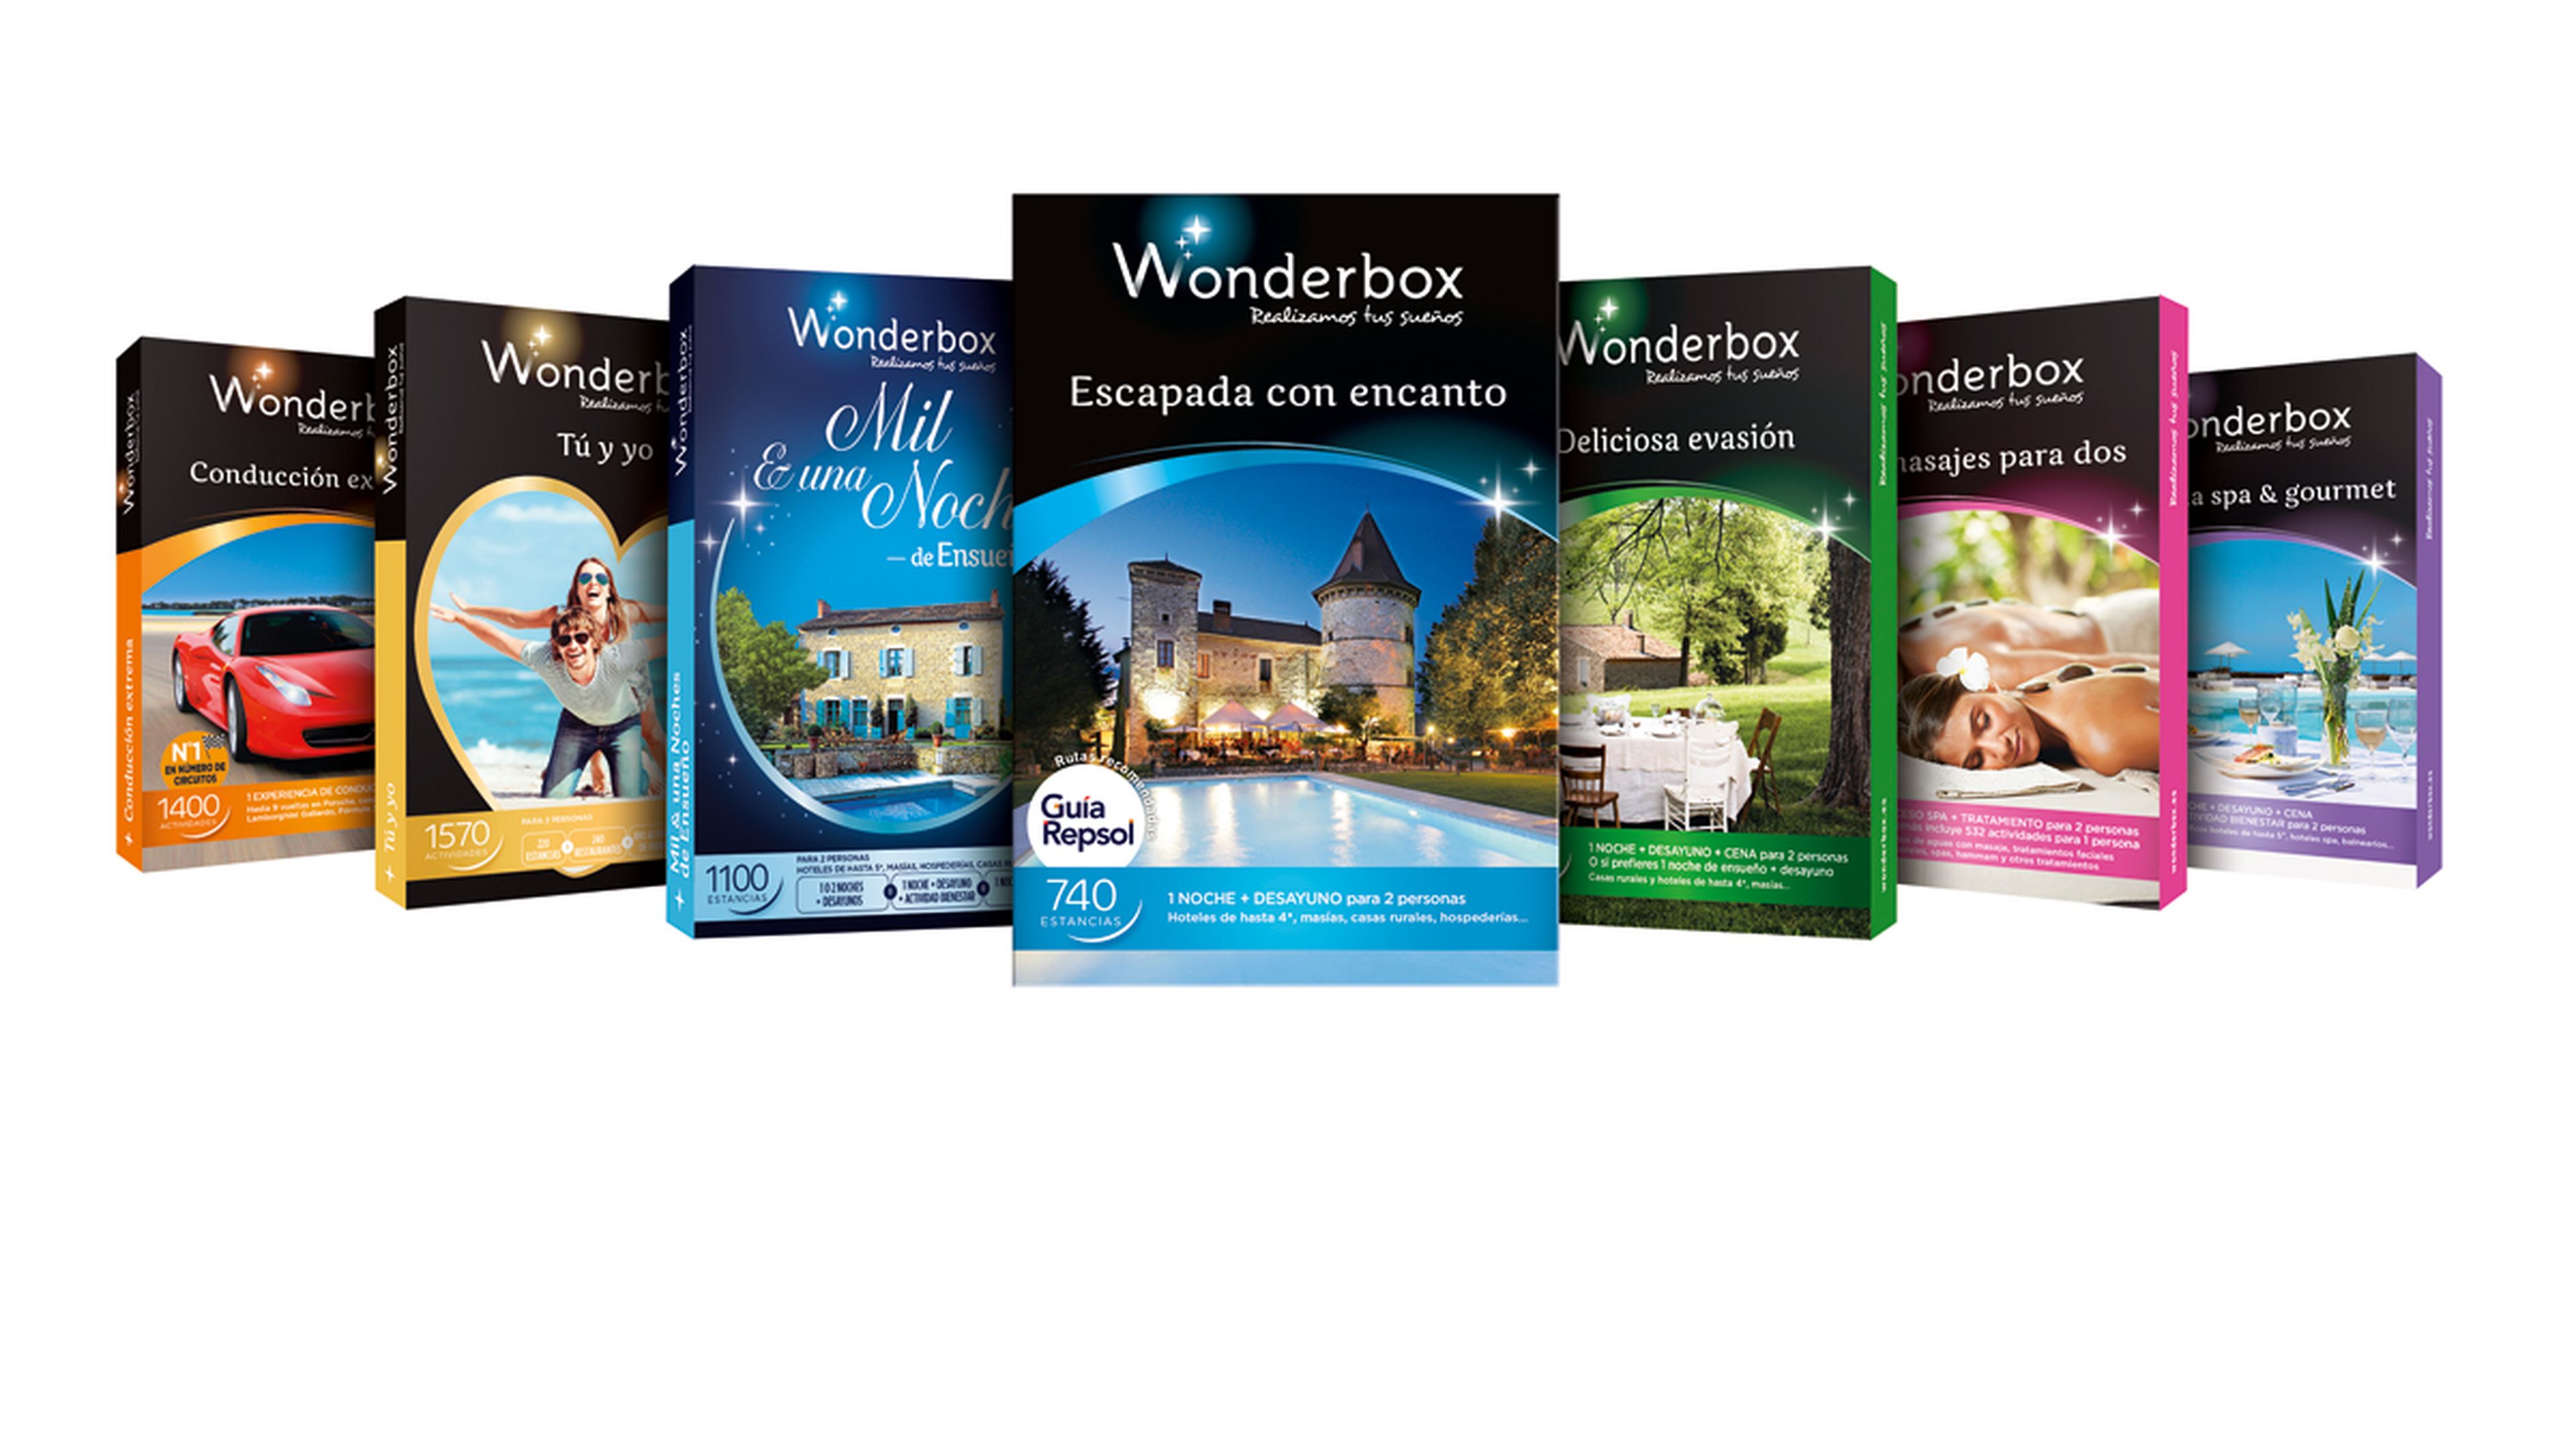 Colección de cofres Wonderbox 2015.